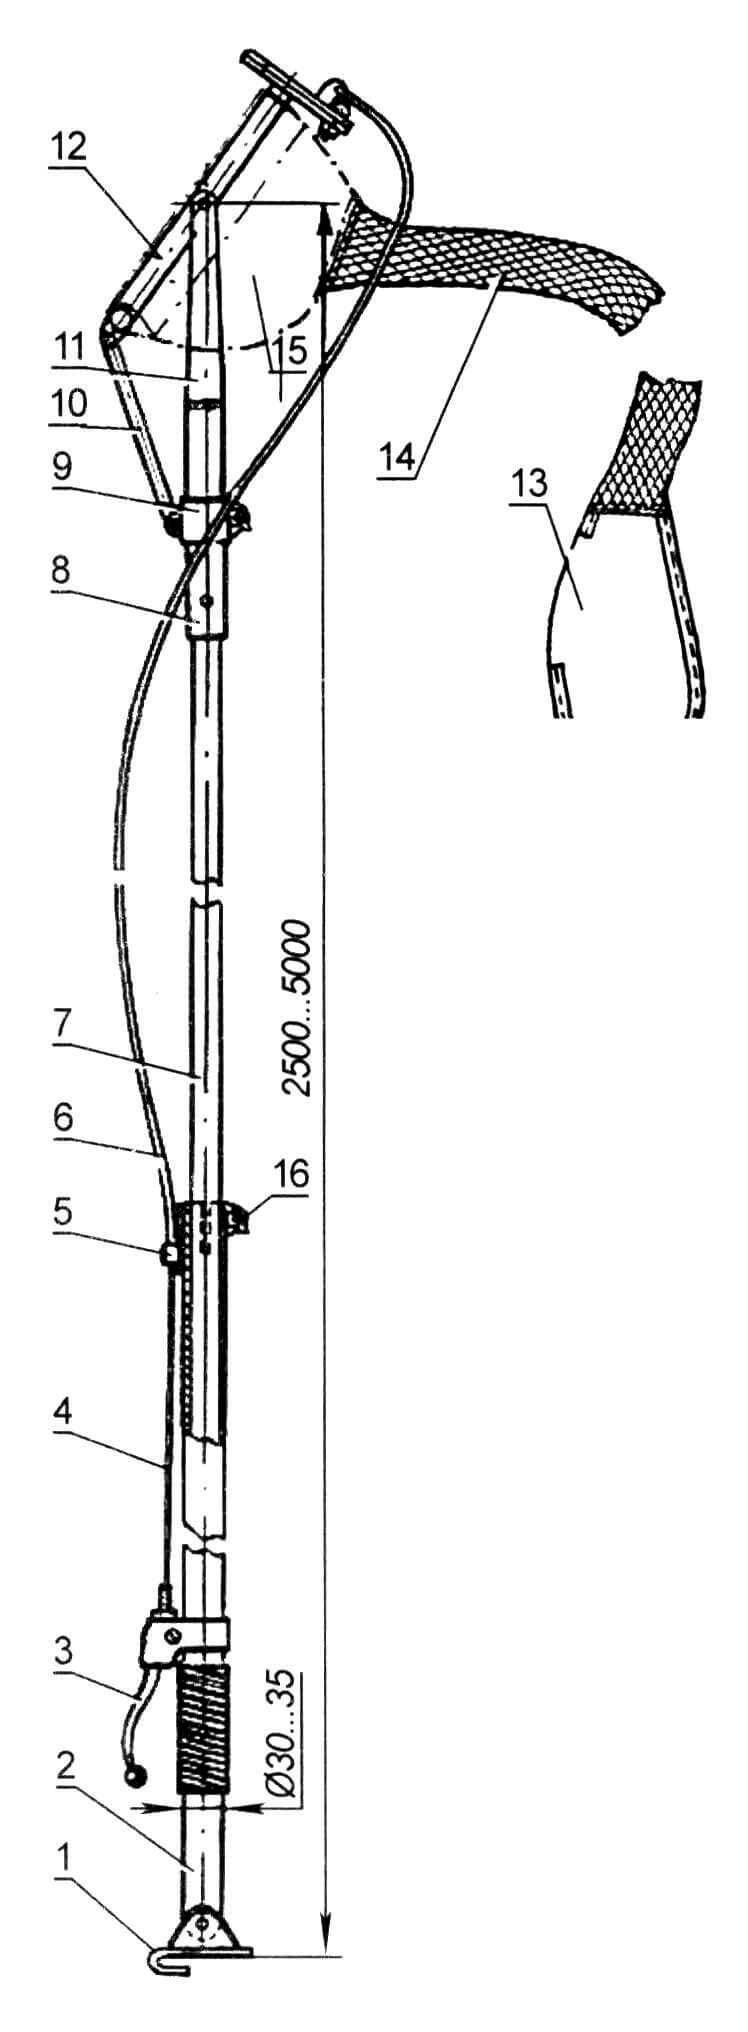 Универсальный плодосъемник со срезающим механизмом и транспортировочным рукавом: 1 - шарнир с крючком для фиксации плодосъемника на поясе сборщика; 2 - полая часть штанги (дюралюминиевая труба ø 30 - 35 мм); 3 - рычаг срезающего механизма; 4 - трос срезающего механизма; 5 - упор; 6 - оболочка троса; 7 - деревянная часть штанги; 8 - основание вилки (стальная труба ø 30-35 мм); 9 - хомут; 10 - тяга; 11 - вилка (стальная полоса сечением 2x30 - 35 мм); 12 - рамка с режущим механизмом; 13 - мешок-накопитель; 14 - рукав; 15 - мешок-ловушка; 16 - хомут-фиксатор